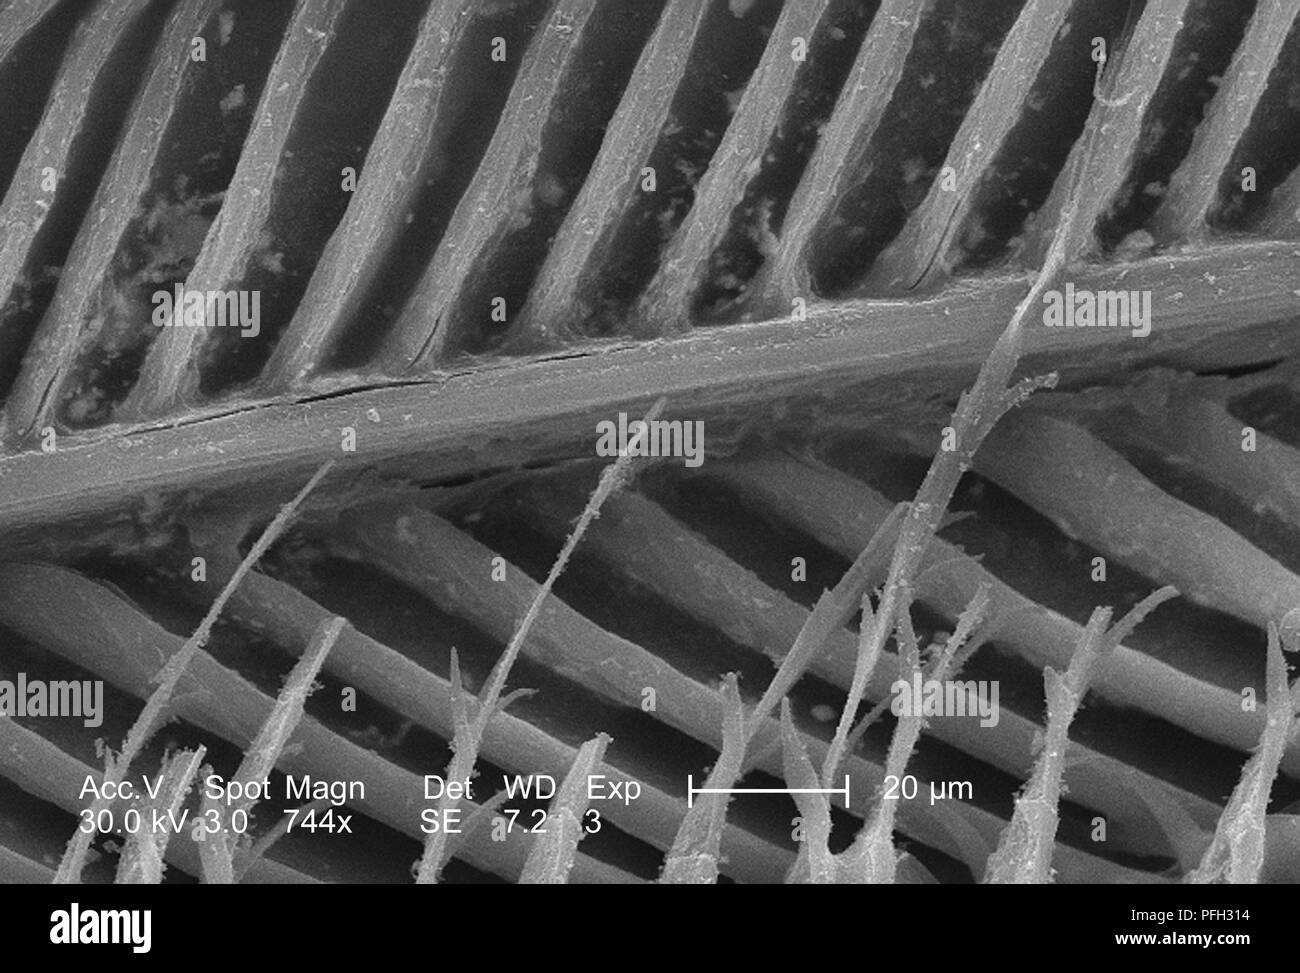 Dettagli ultrastrutturali di piuma non identificato ha rivelato nel 744x di scansione ingrandita al microscopio elettronico (SEM) immagine, 2006. Immagine cortesia di centri per il controllo delle malattie (CDC) / Janice Haney Carr. () Foto Stock